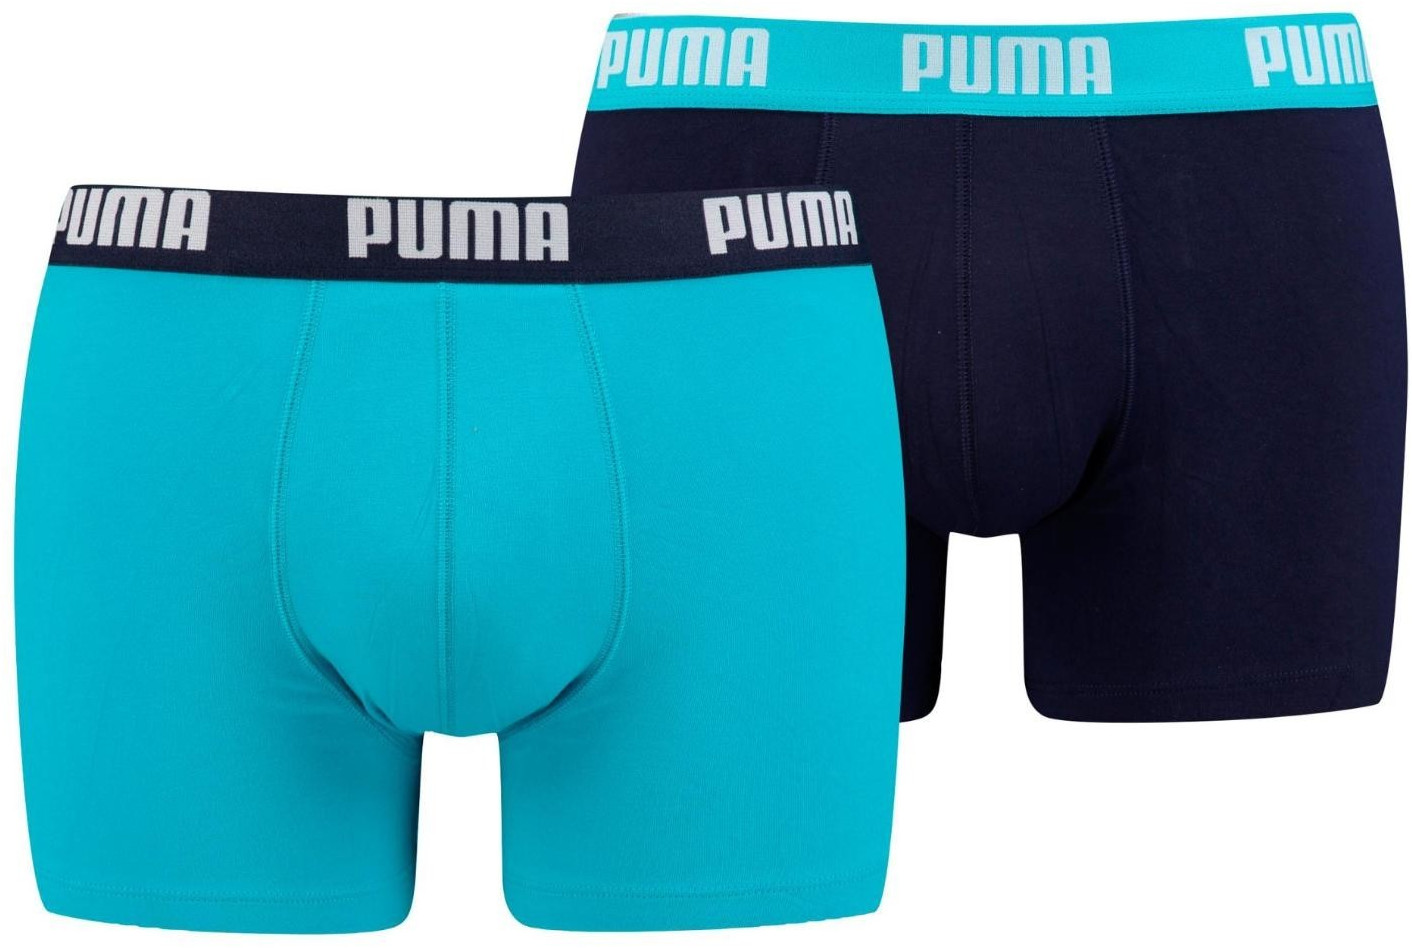 Puma Boxer Shorts 2er-Pack (521015001-796) ab 9,99 € | Preisvergleich bei